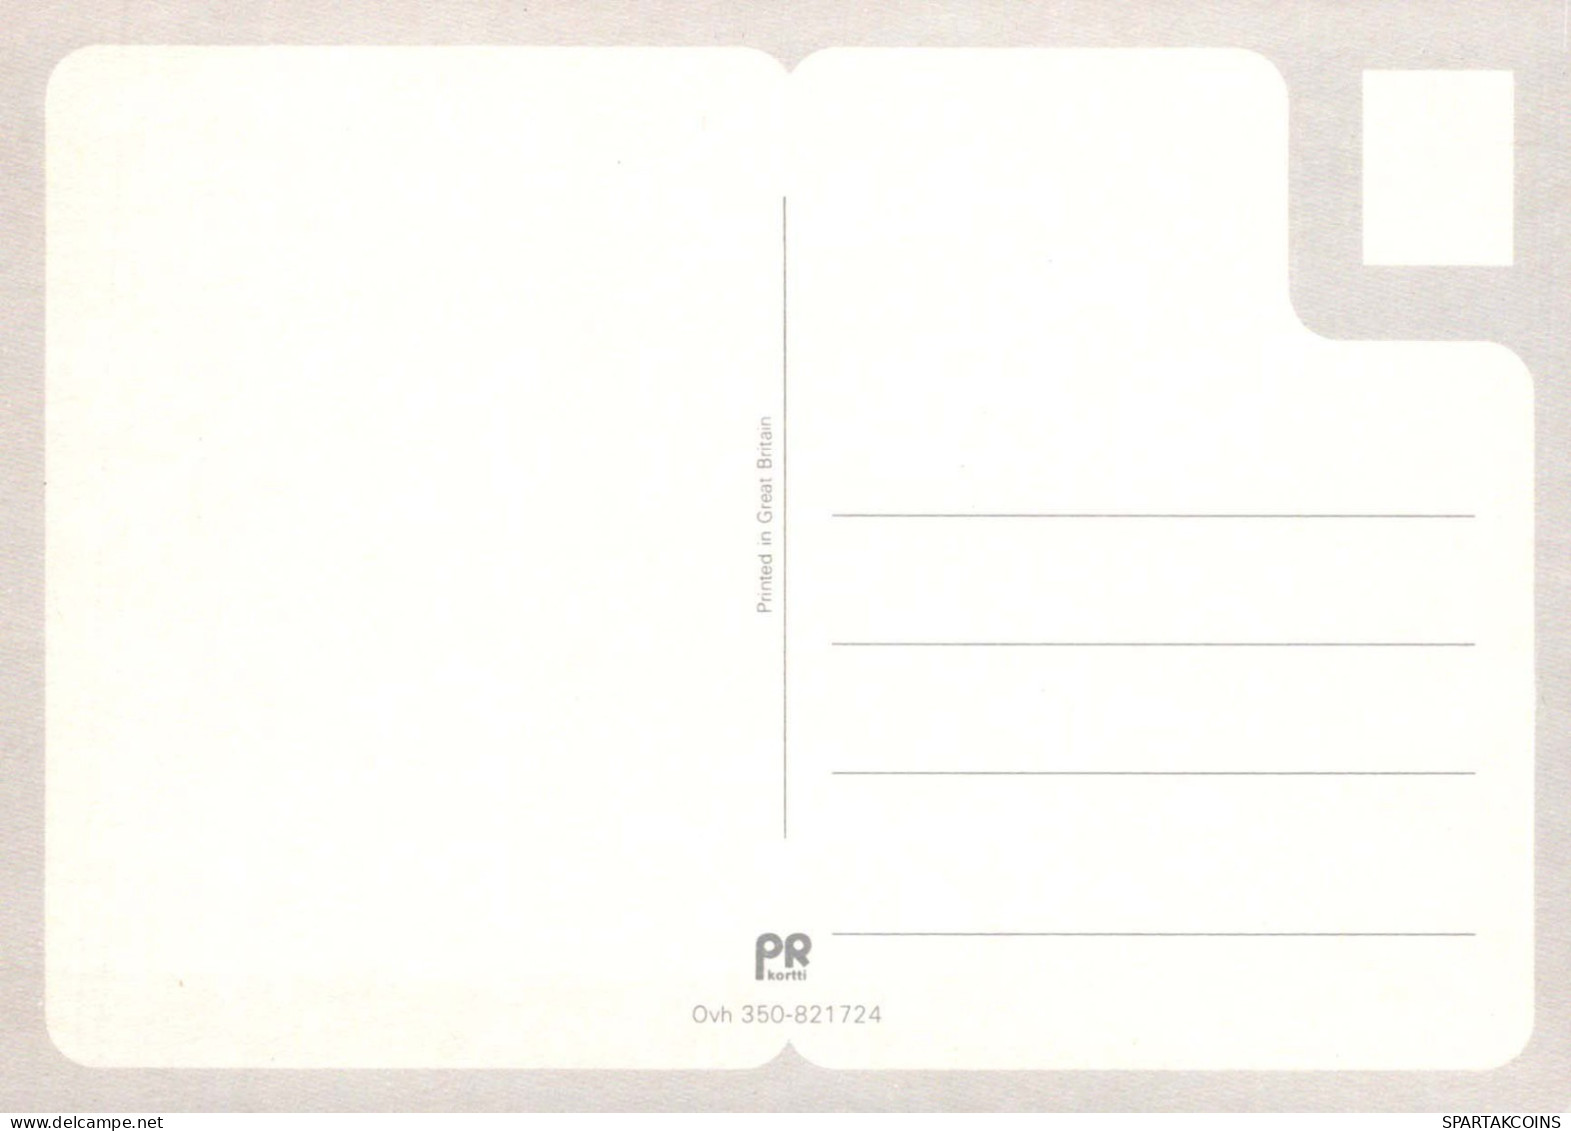 NIÑOS HUMOR Vintage Tarjeta Postal CPSM #PBV163.ES - Humorous Cards